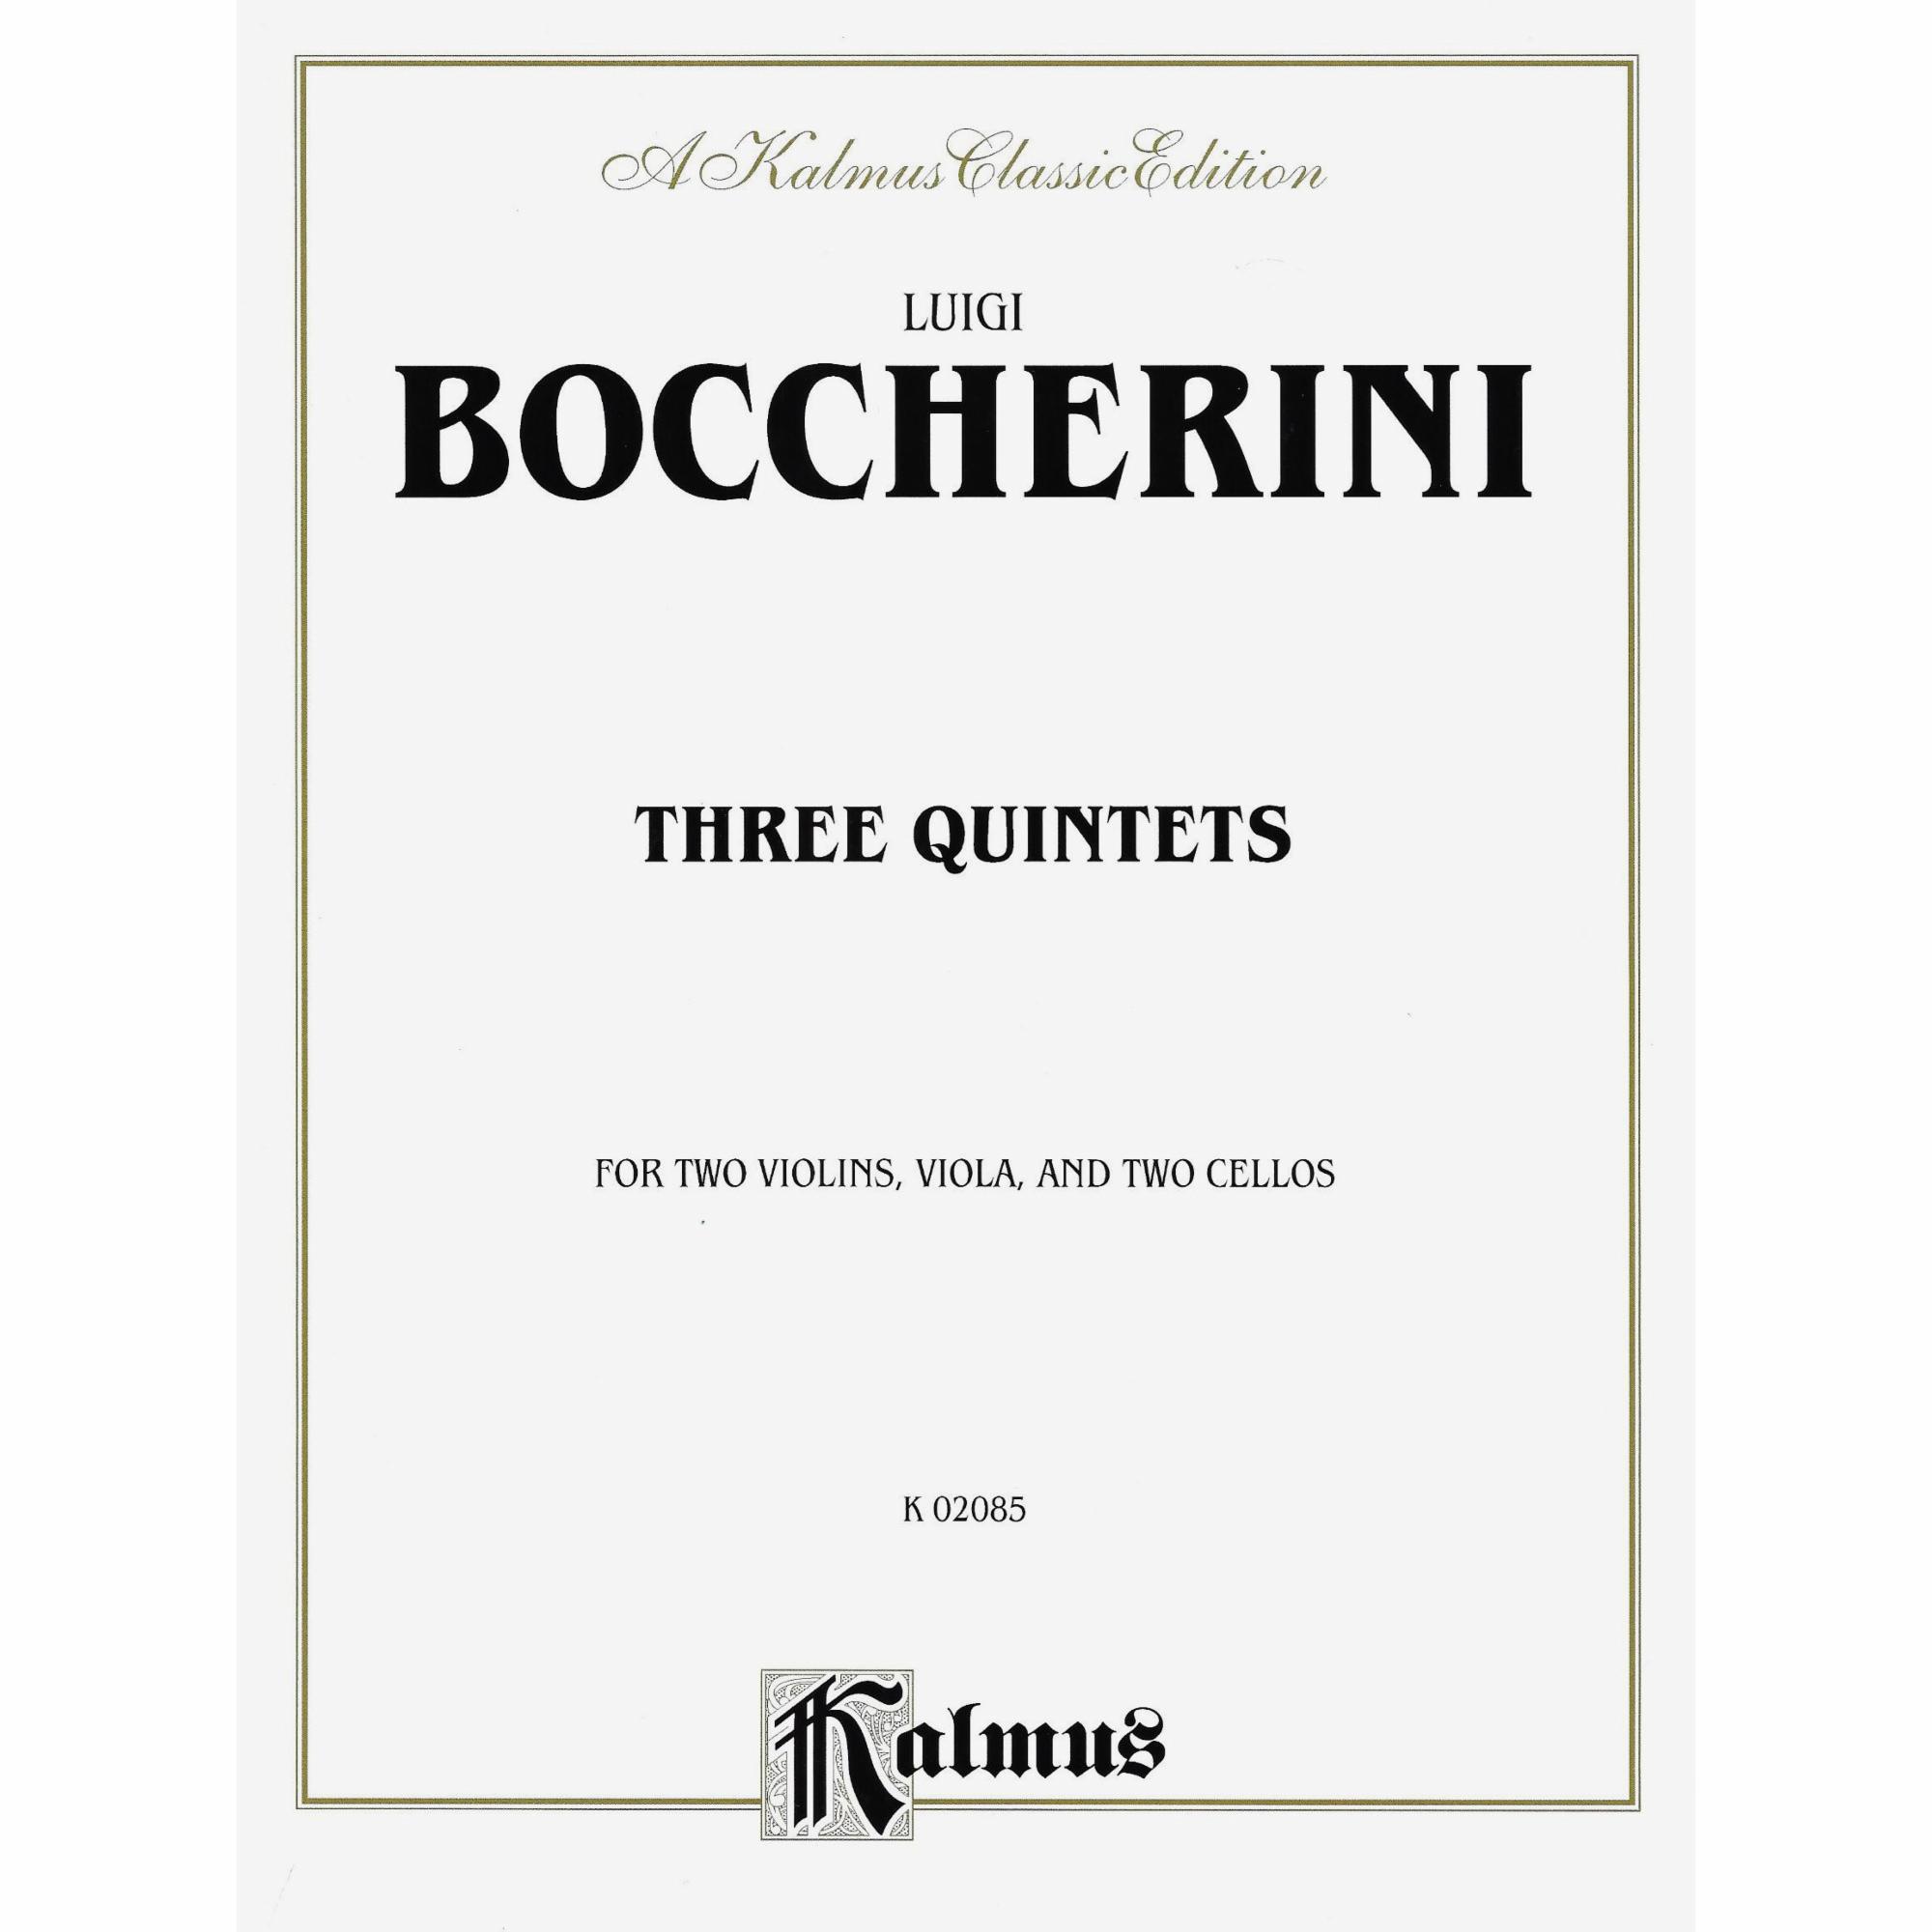 Boccherini -- Three Quintets